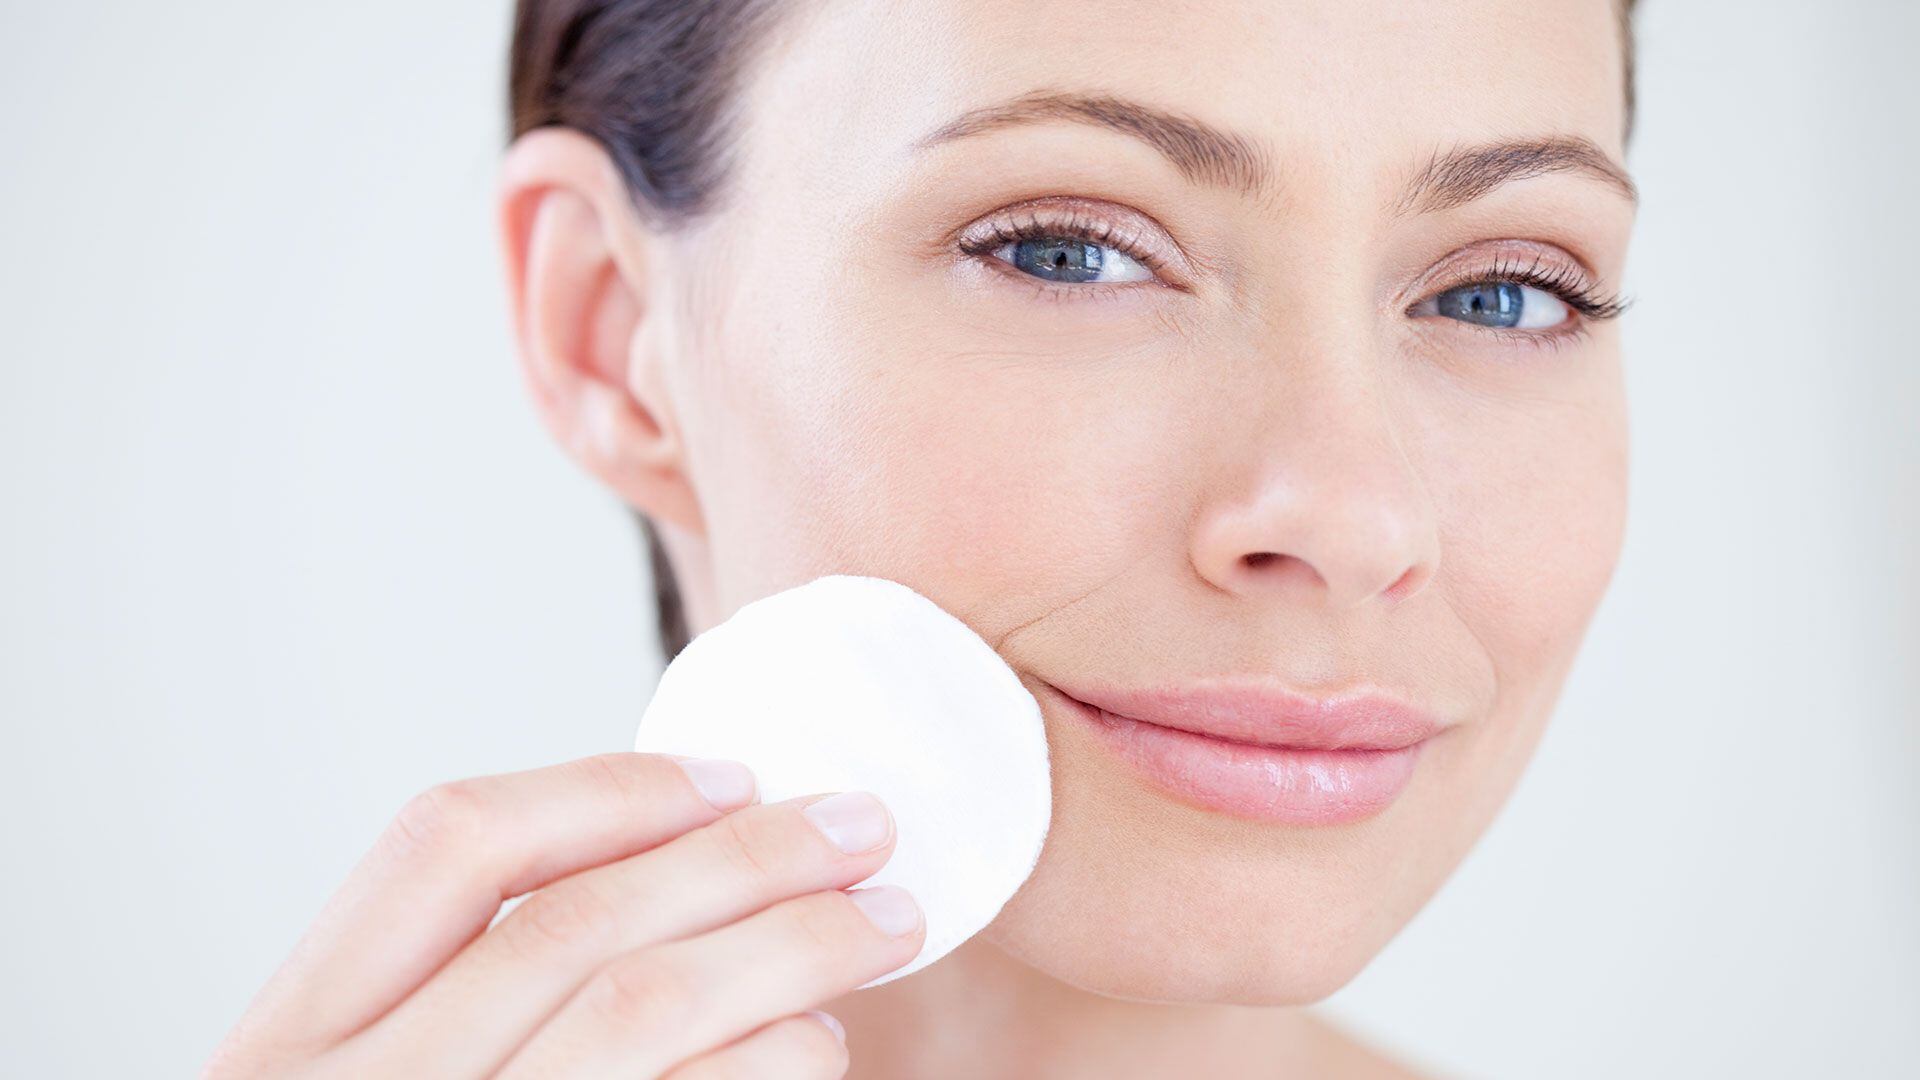 Se pueden incorporar otros productos  como suero, exfoliante y crema de ojos dependiendo de los objetivos individuales de cuidado de piel (Getty Images)